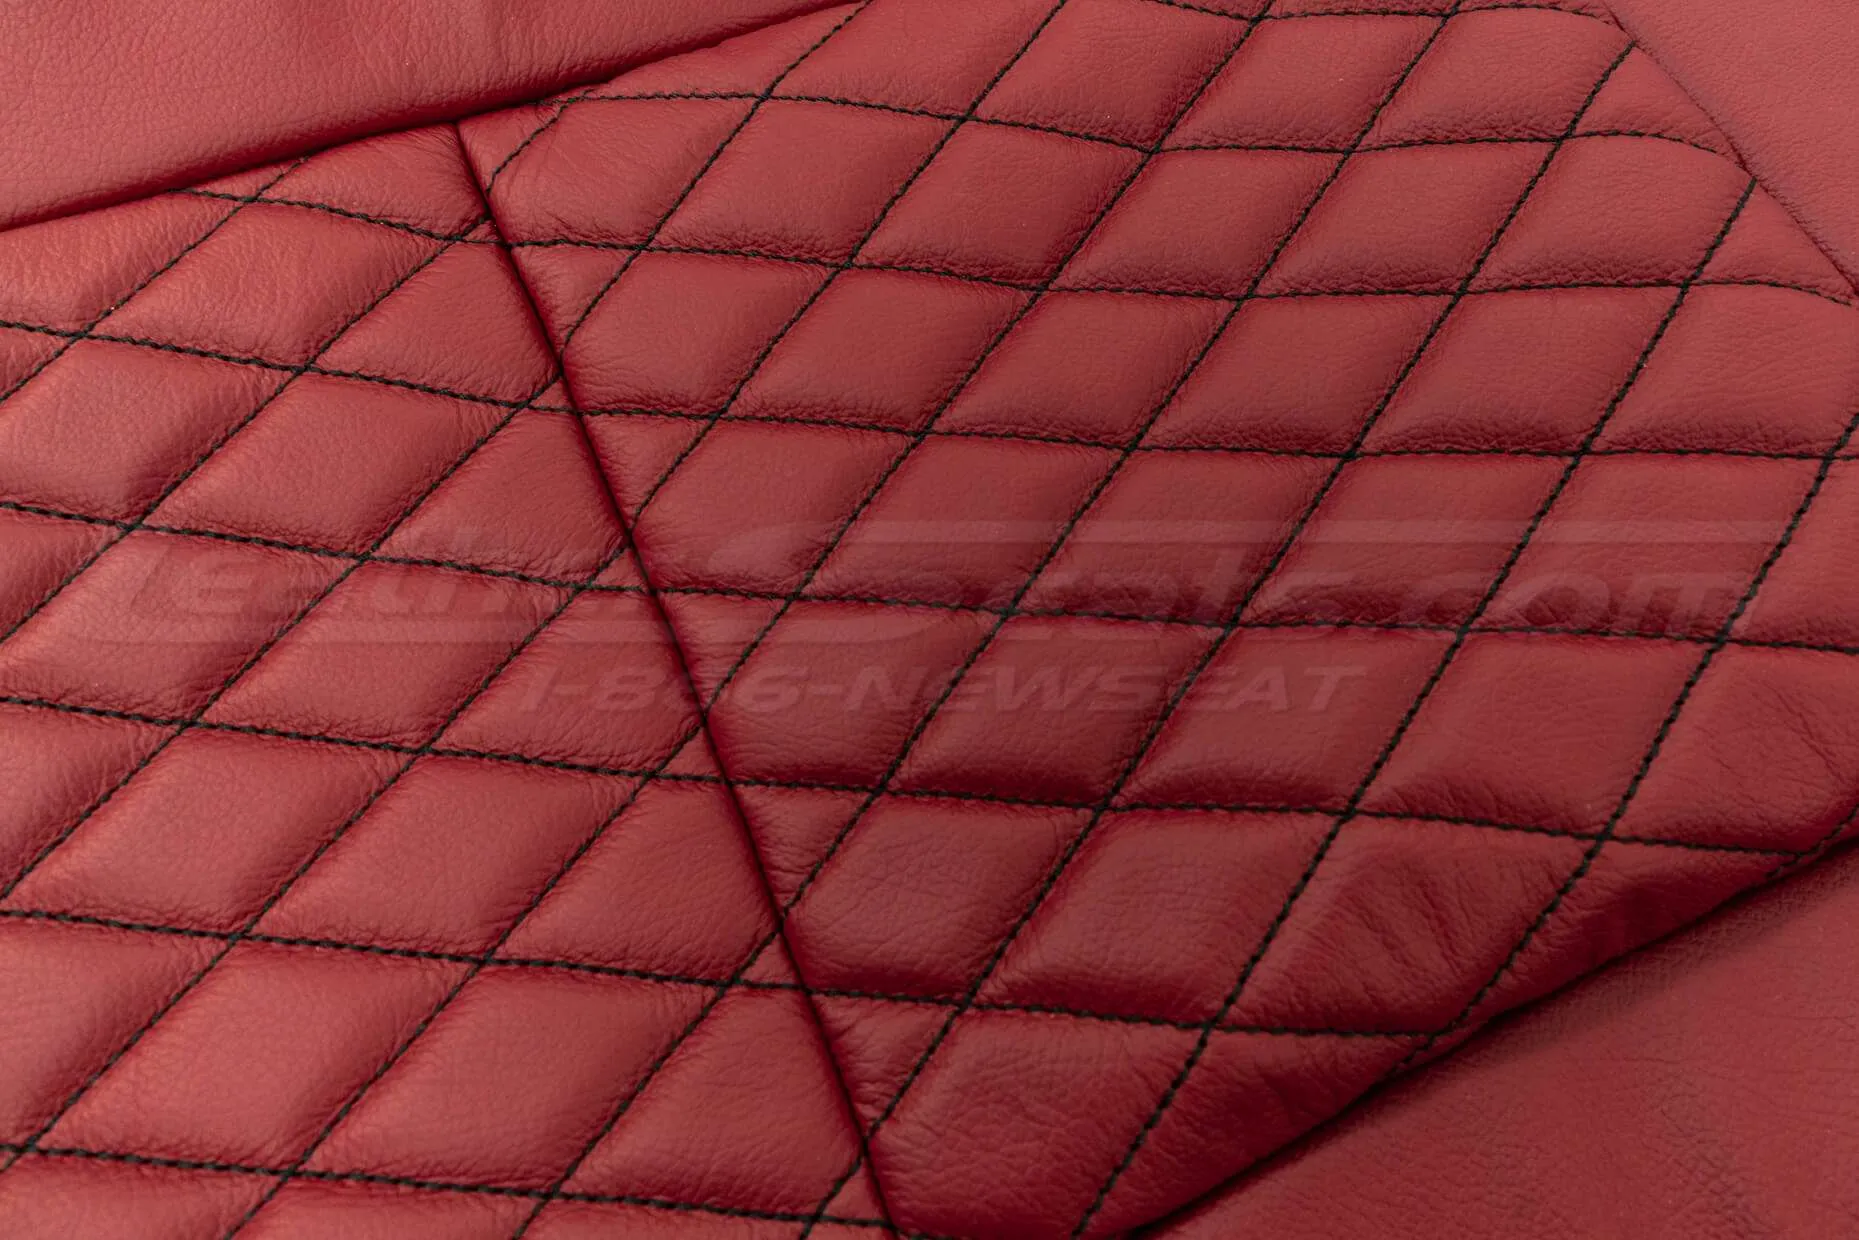 Diamond Stitched pattern side view